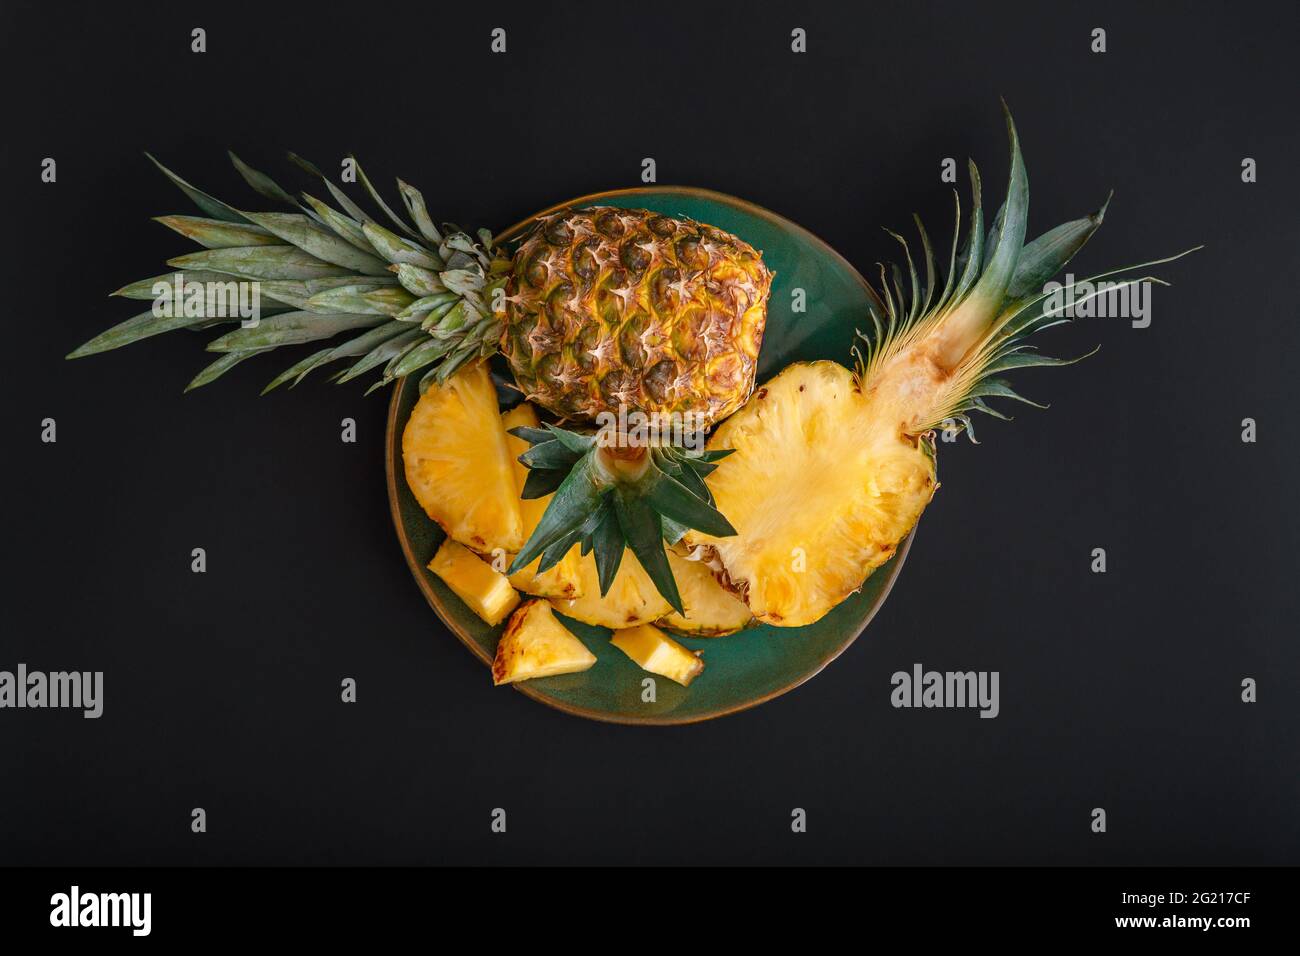 Ananas a fette. Bromelina ananas intero tropicale frutta estate metà ananas nero sfondo scuro su piatto verde. Dessert di frutta estiva vista dall'alto Foto Stock